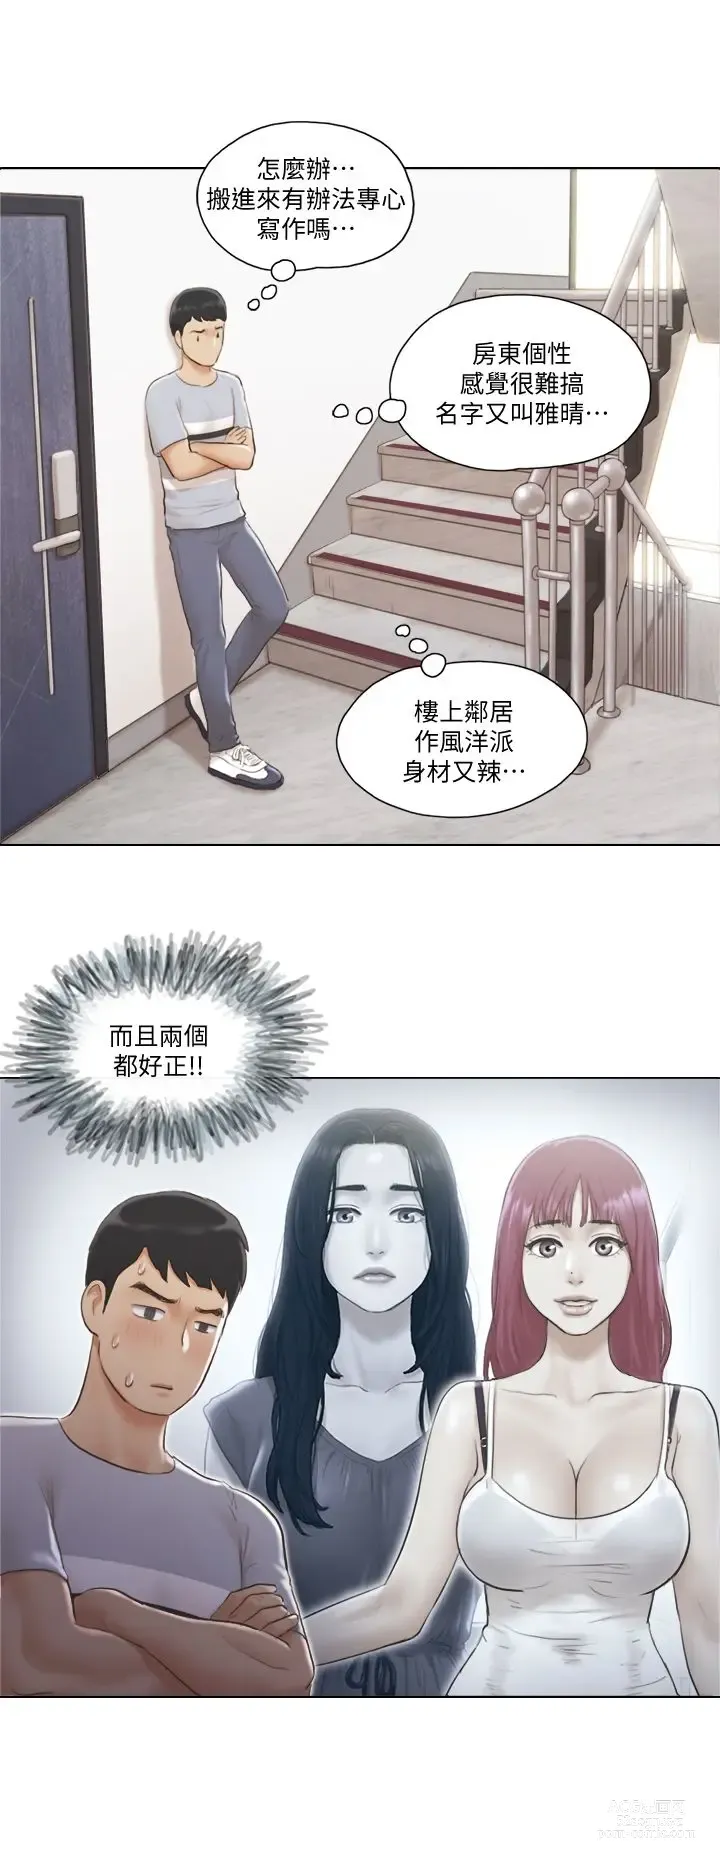 Page 25 of manga 單身女子公寓 1-41 END